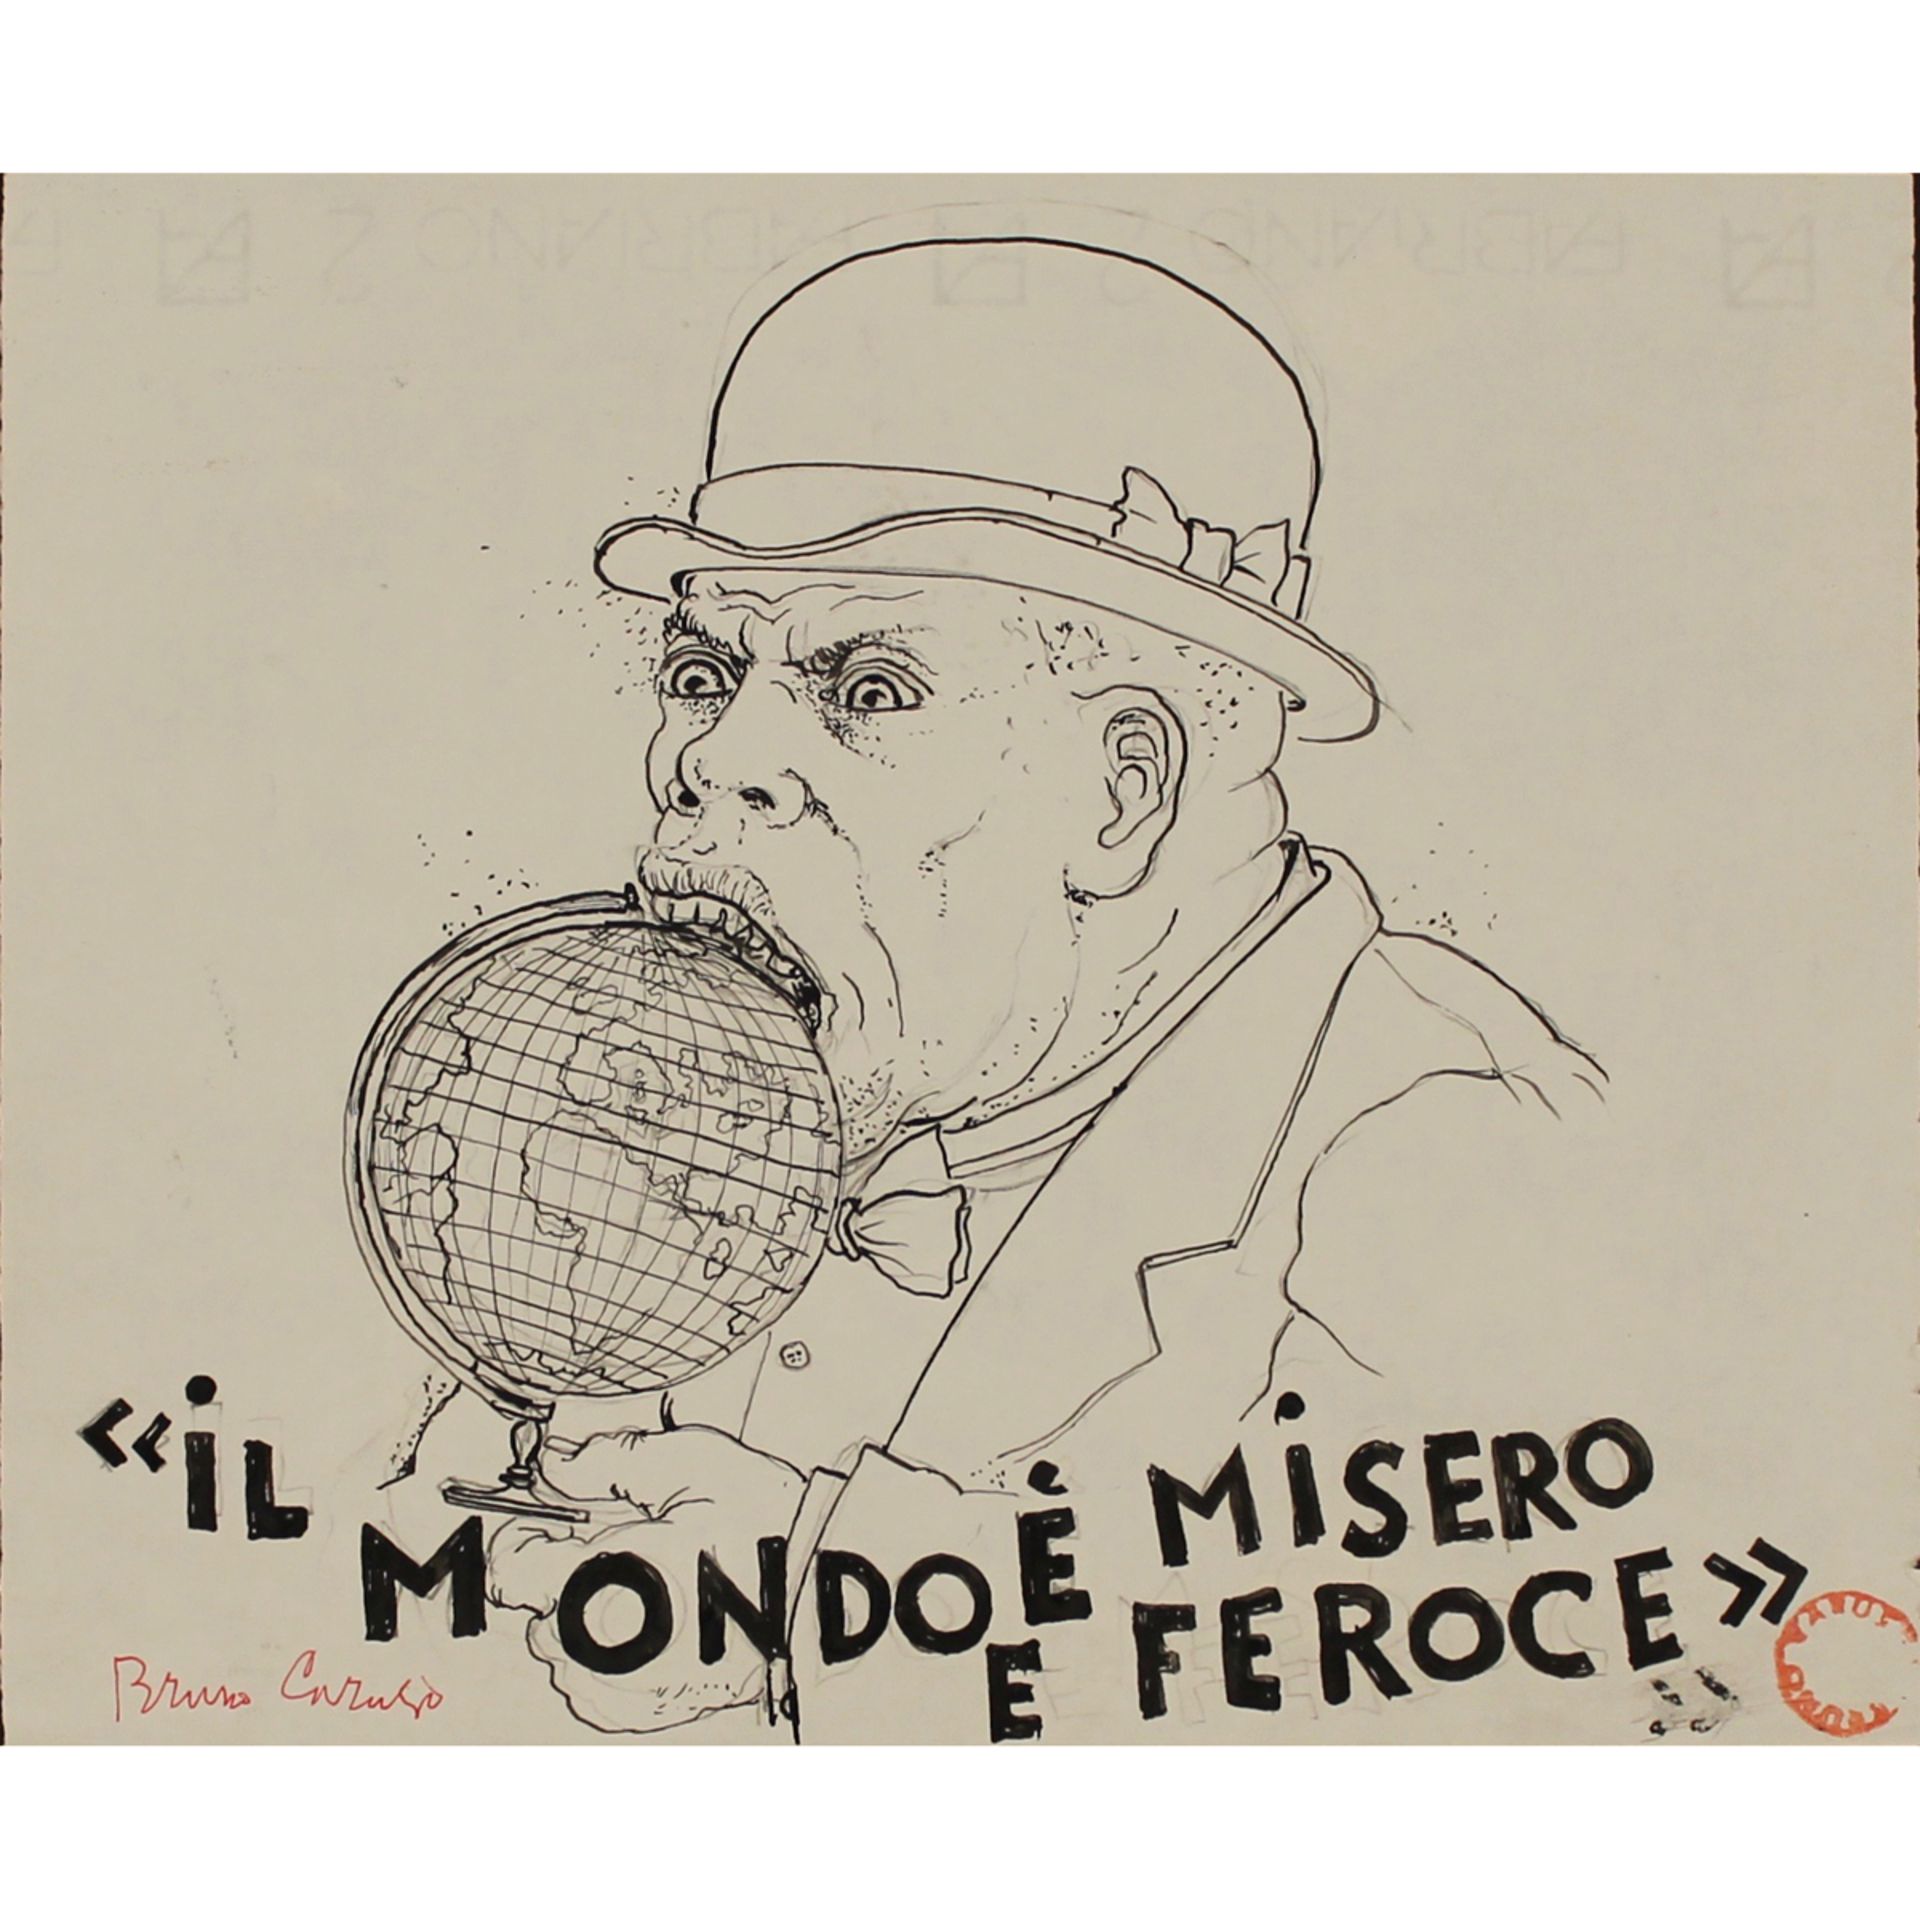 BRUNO CARUSO (1927-2018) "Il mondo Ã¨ misero e feroce" - "The world is miserable and ferocious"